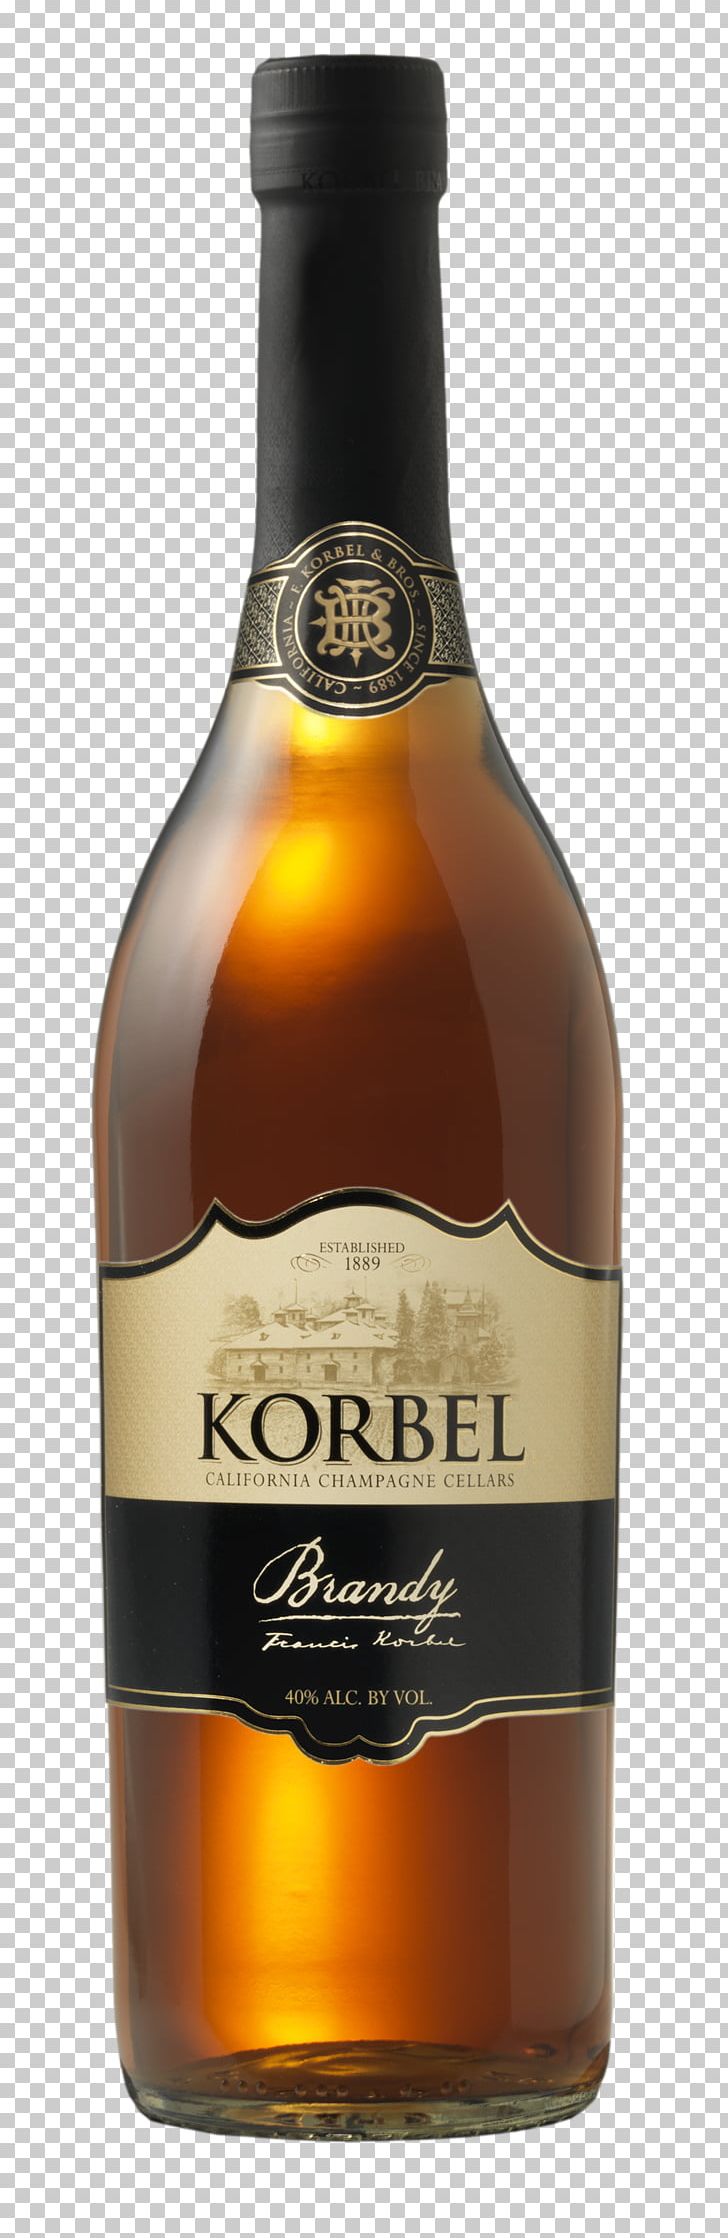 Korbel Champagne Cellars Brandy Distilled Beverage Wine Beer PNG, Clipart, Beer Bottle, Bottle, Bottle Shop, Brandy, Brandy Bottle Free PNG Download